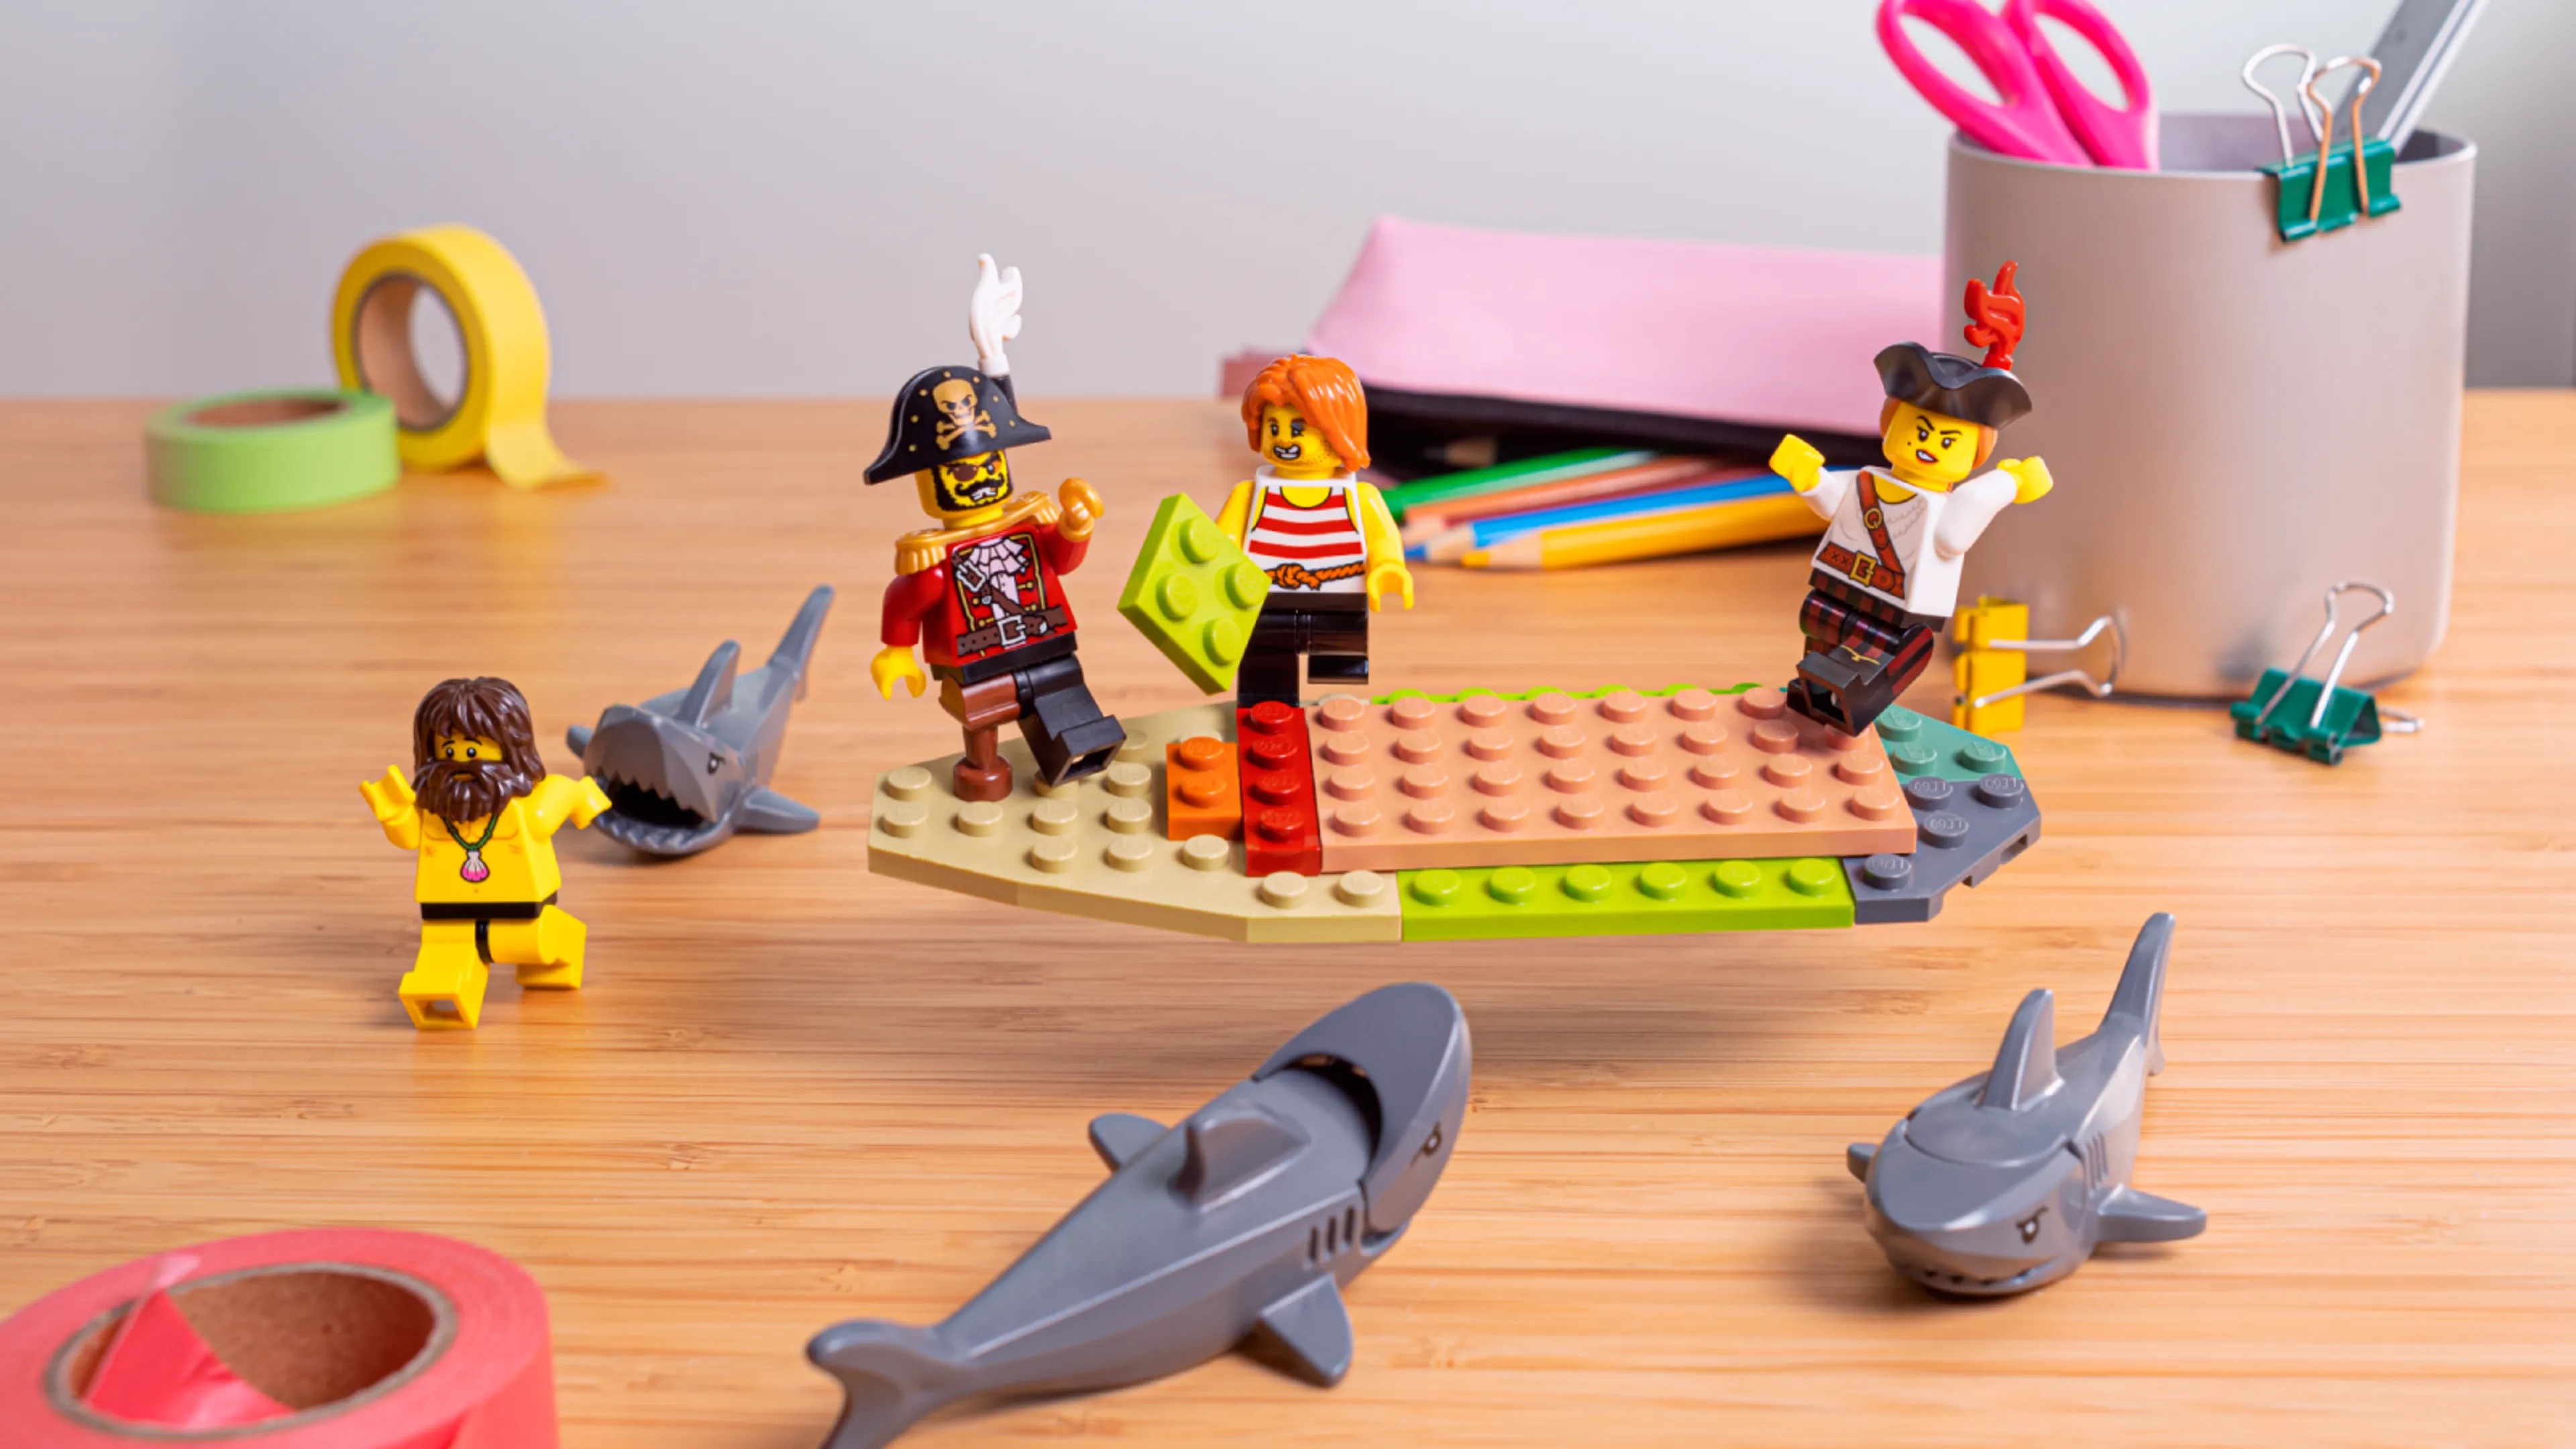 Minifiguren die de bodem van het schip bouwen, omringd door haaien